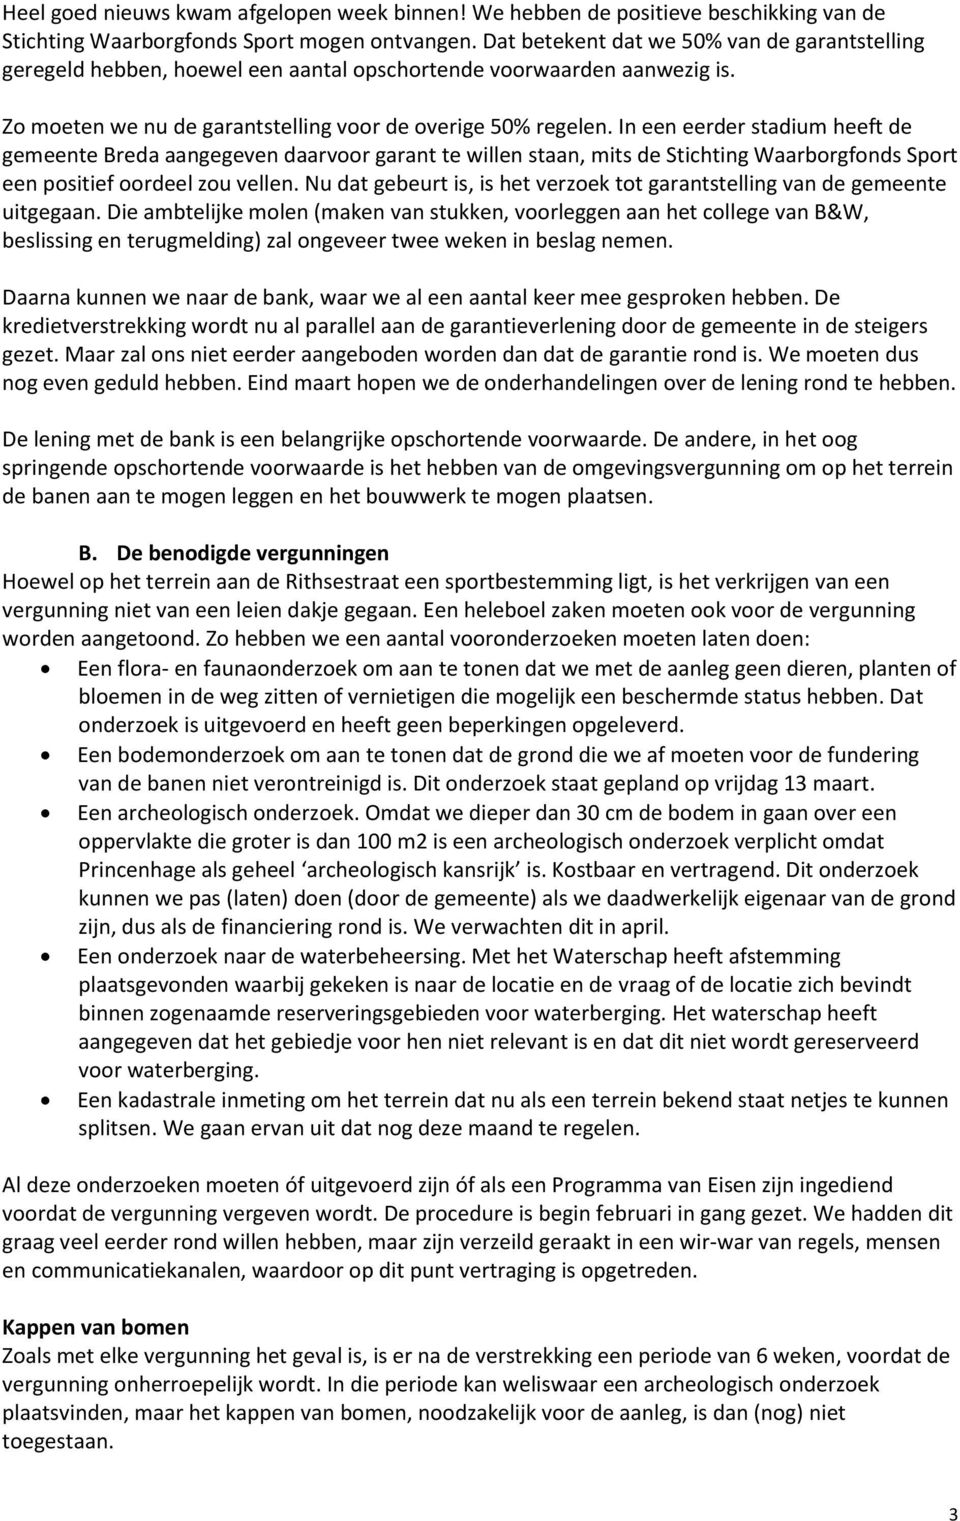 In een eerder stadium heeft de gemeente Breda aangegeven daarvoor garant te willen staan, mits de Stichting Waarborgfonds Sport een positief oordeel zou vellen.